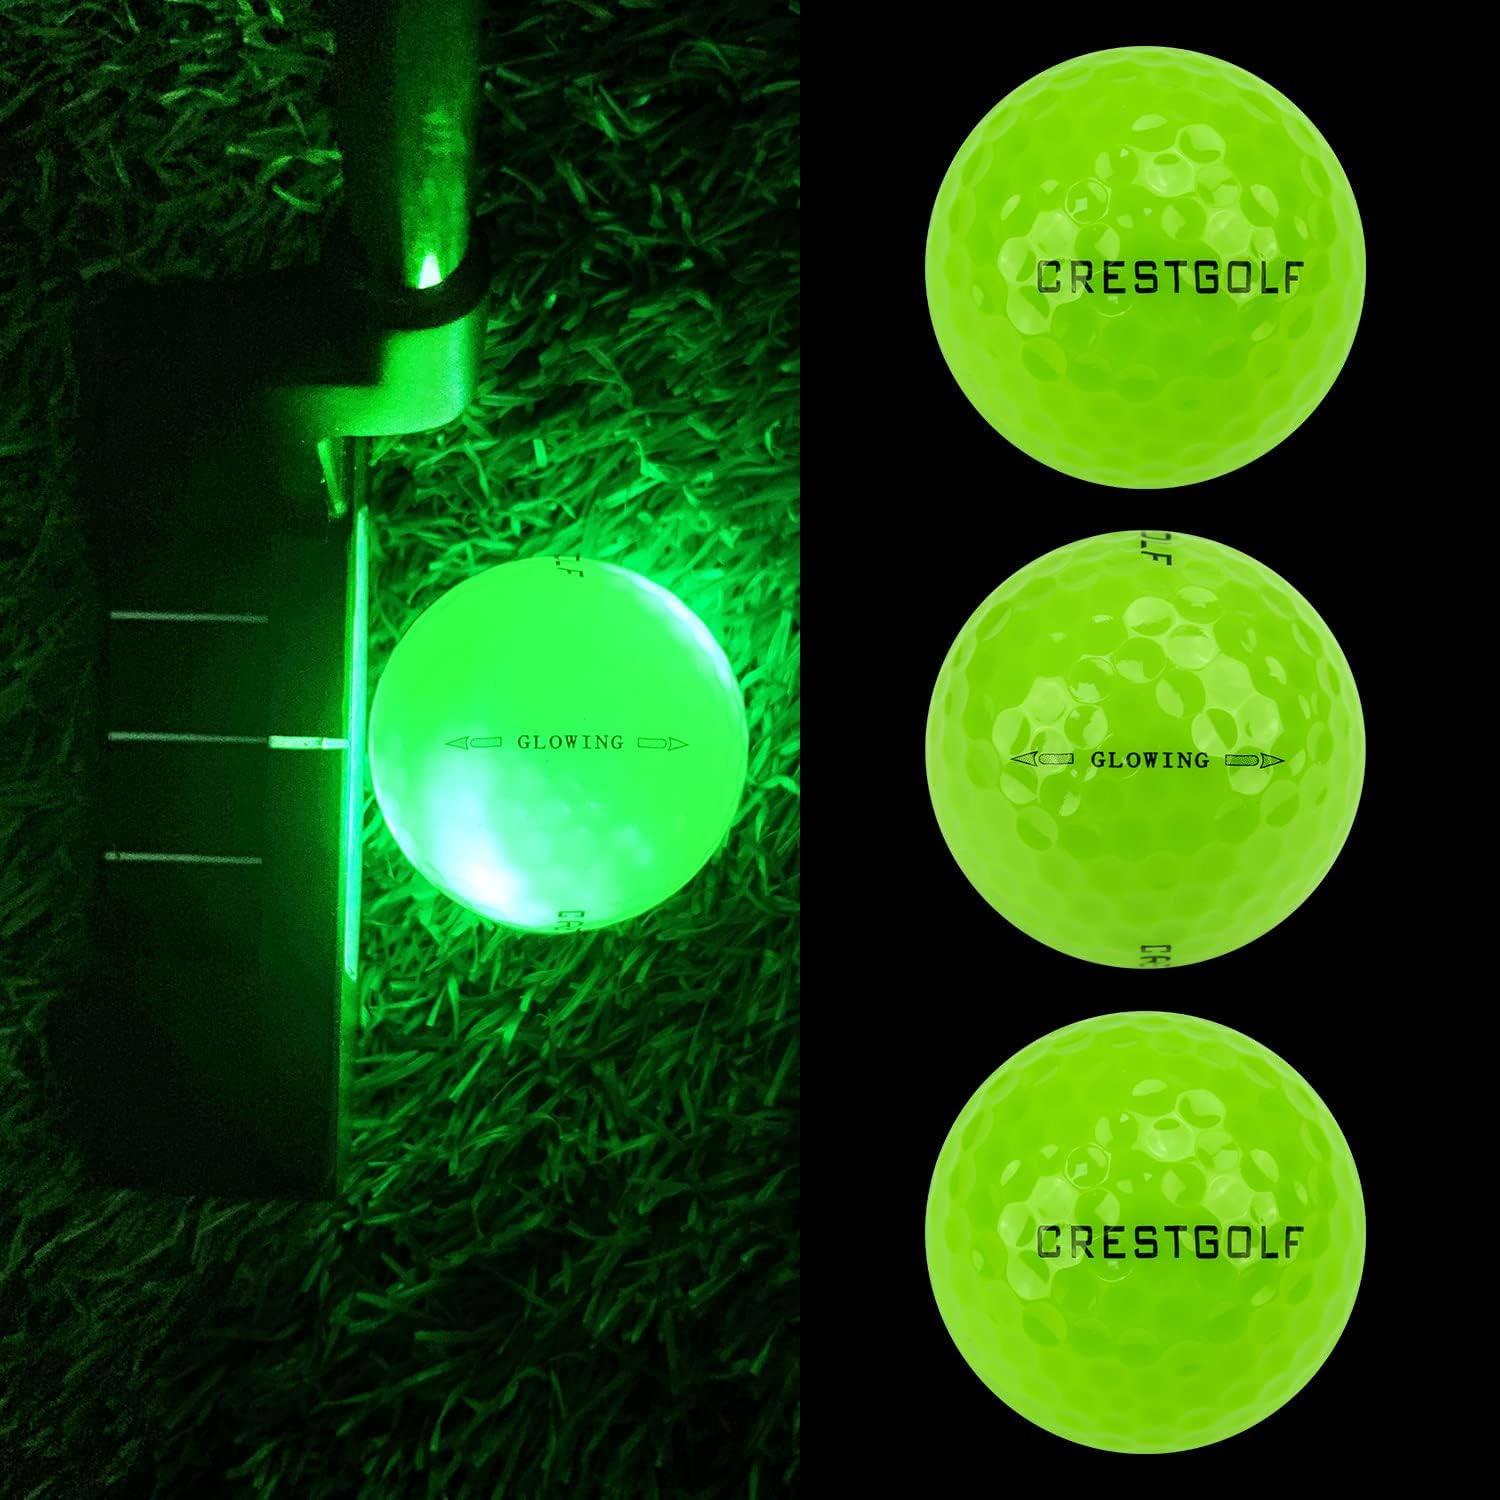 Crestgolf LED Golfbälle bunt 